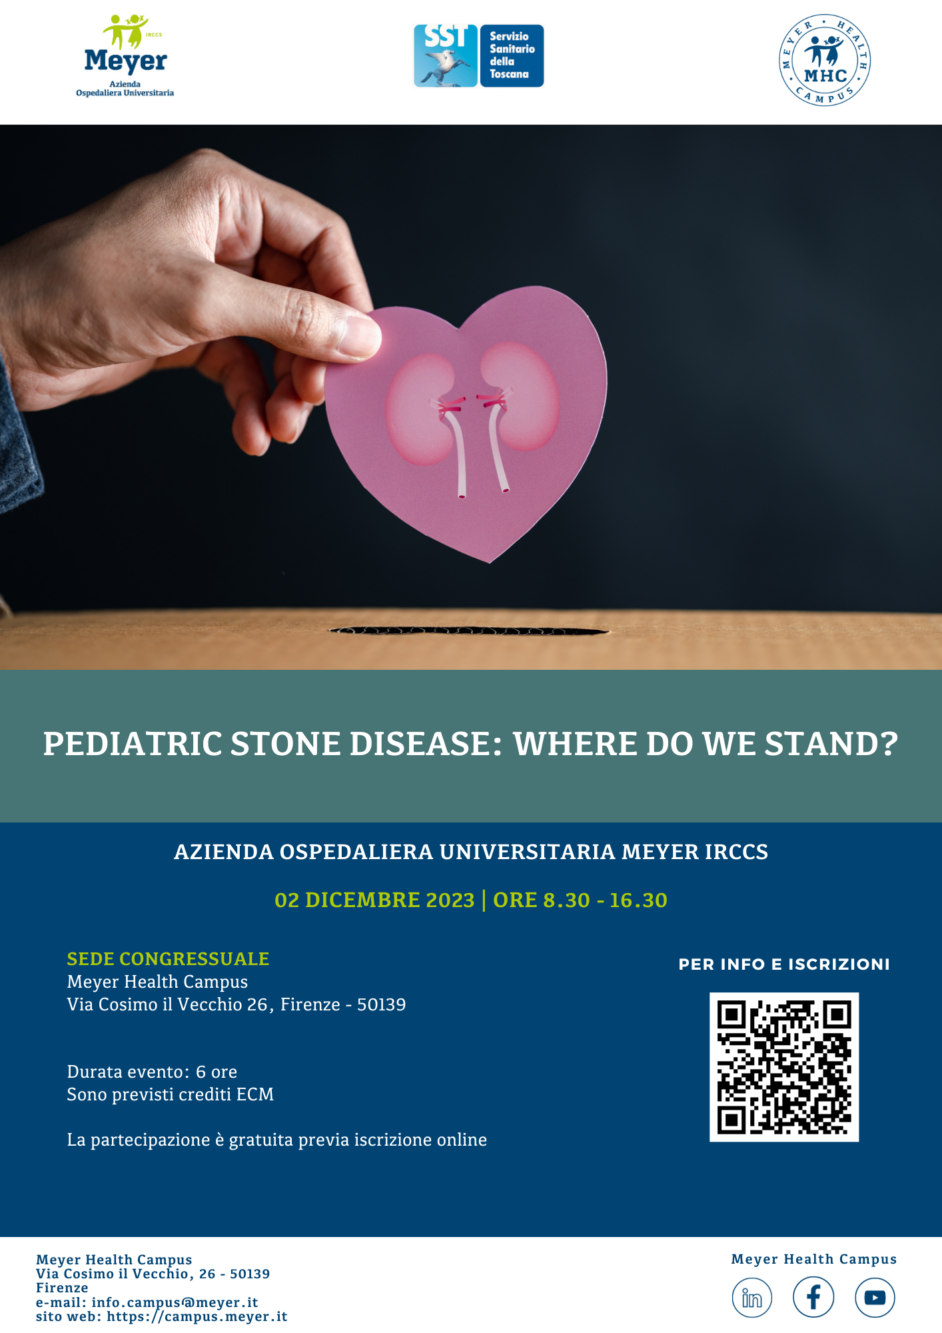 Pediatric stone disease: where do we stand? (2 dicembre 2023)